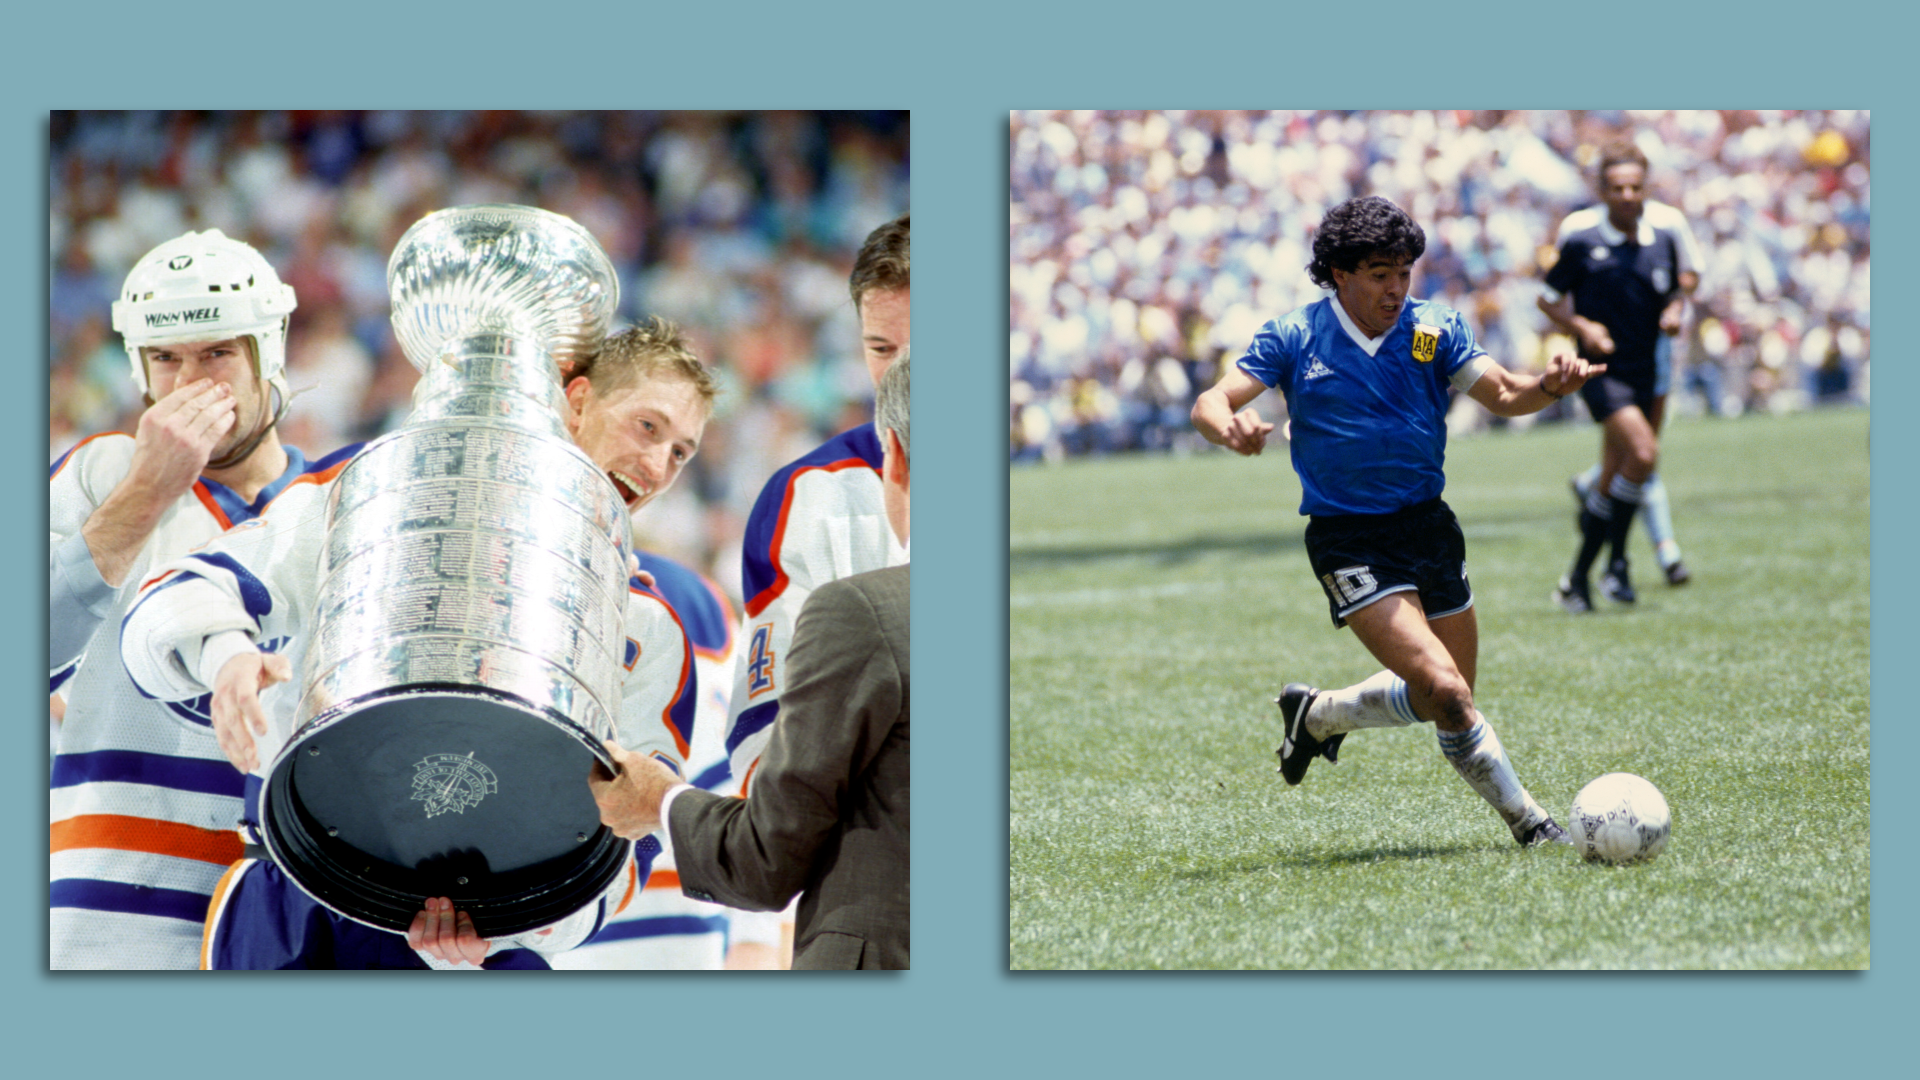 Gretzky and Maradona